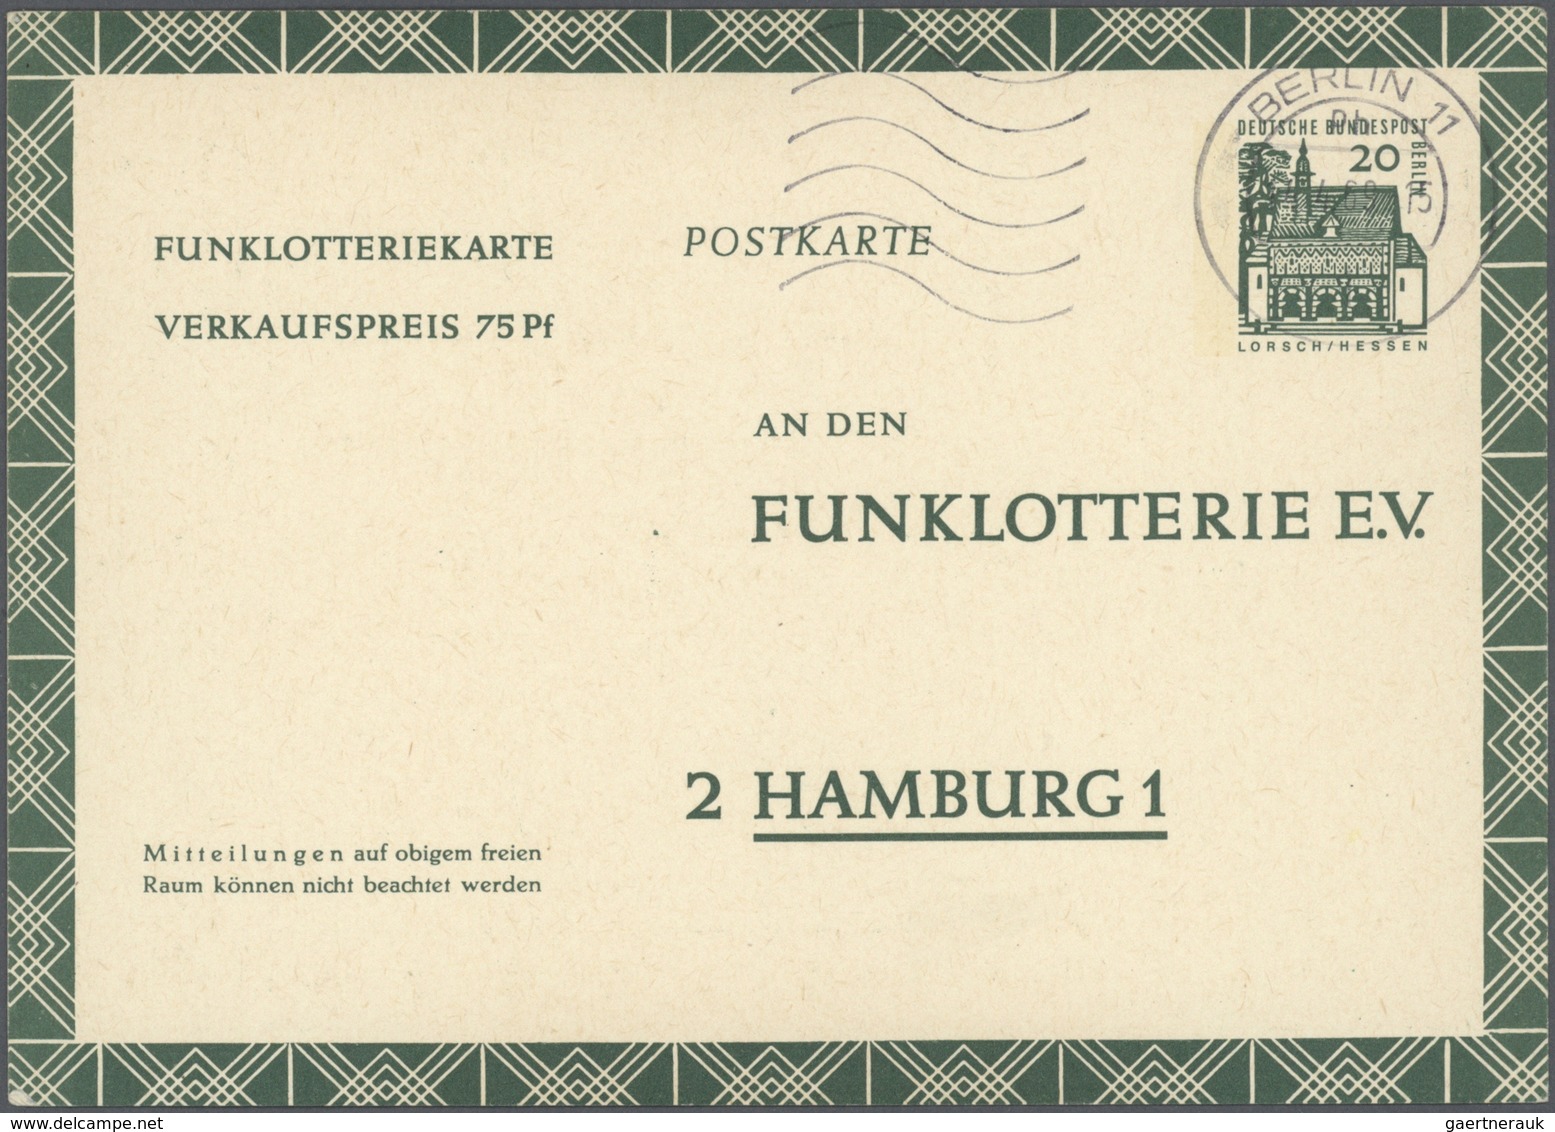 32552 Berlin - Ganzsachen: ab 1949, Partie von ca. 200 Ganzsachenkarten/-umschlägen ab Währungsgeschädigte